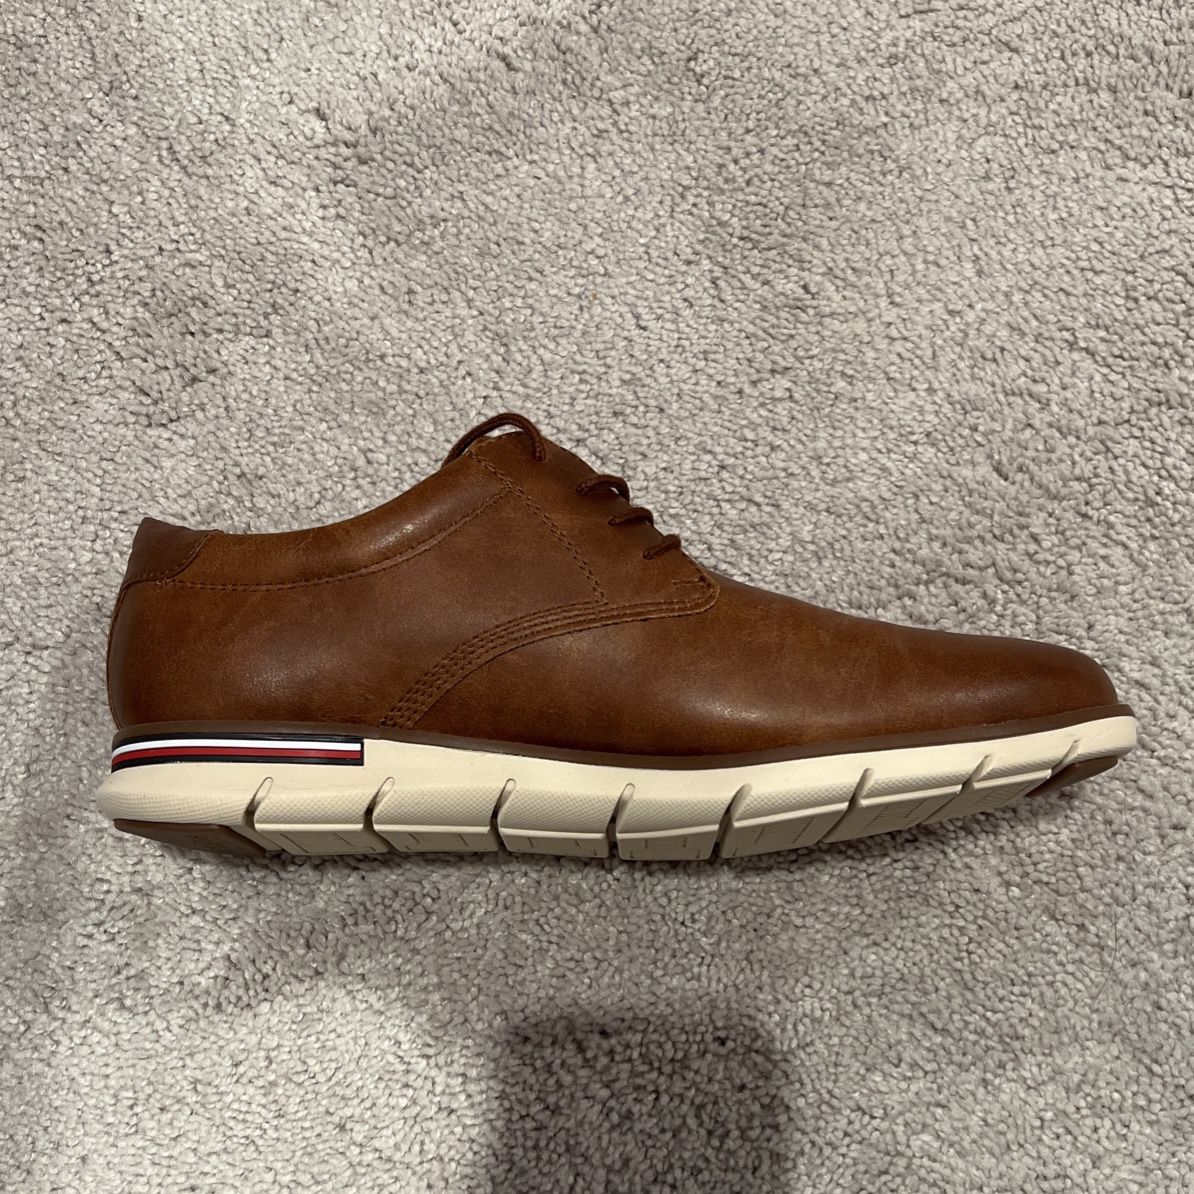 Men’s 10.5 Tommy Hilfiger Dress Sneakers